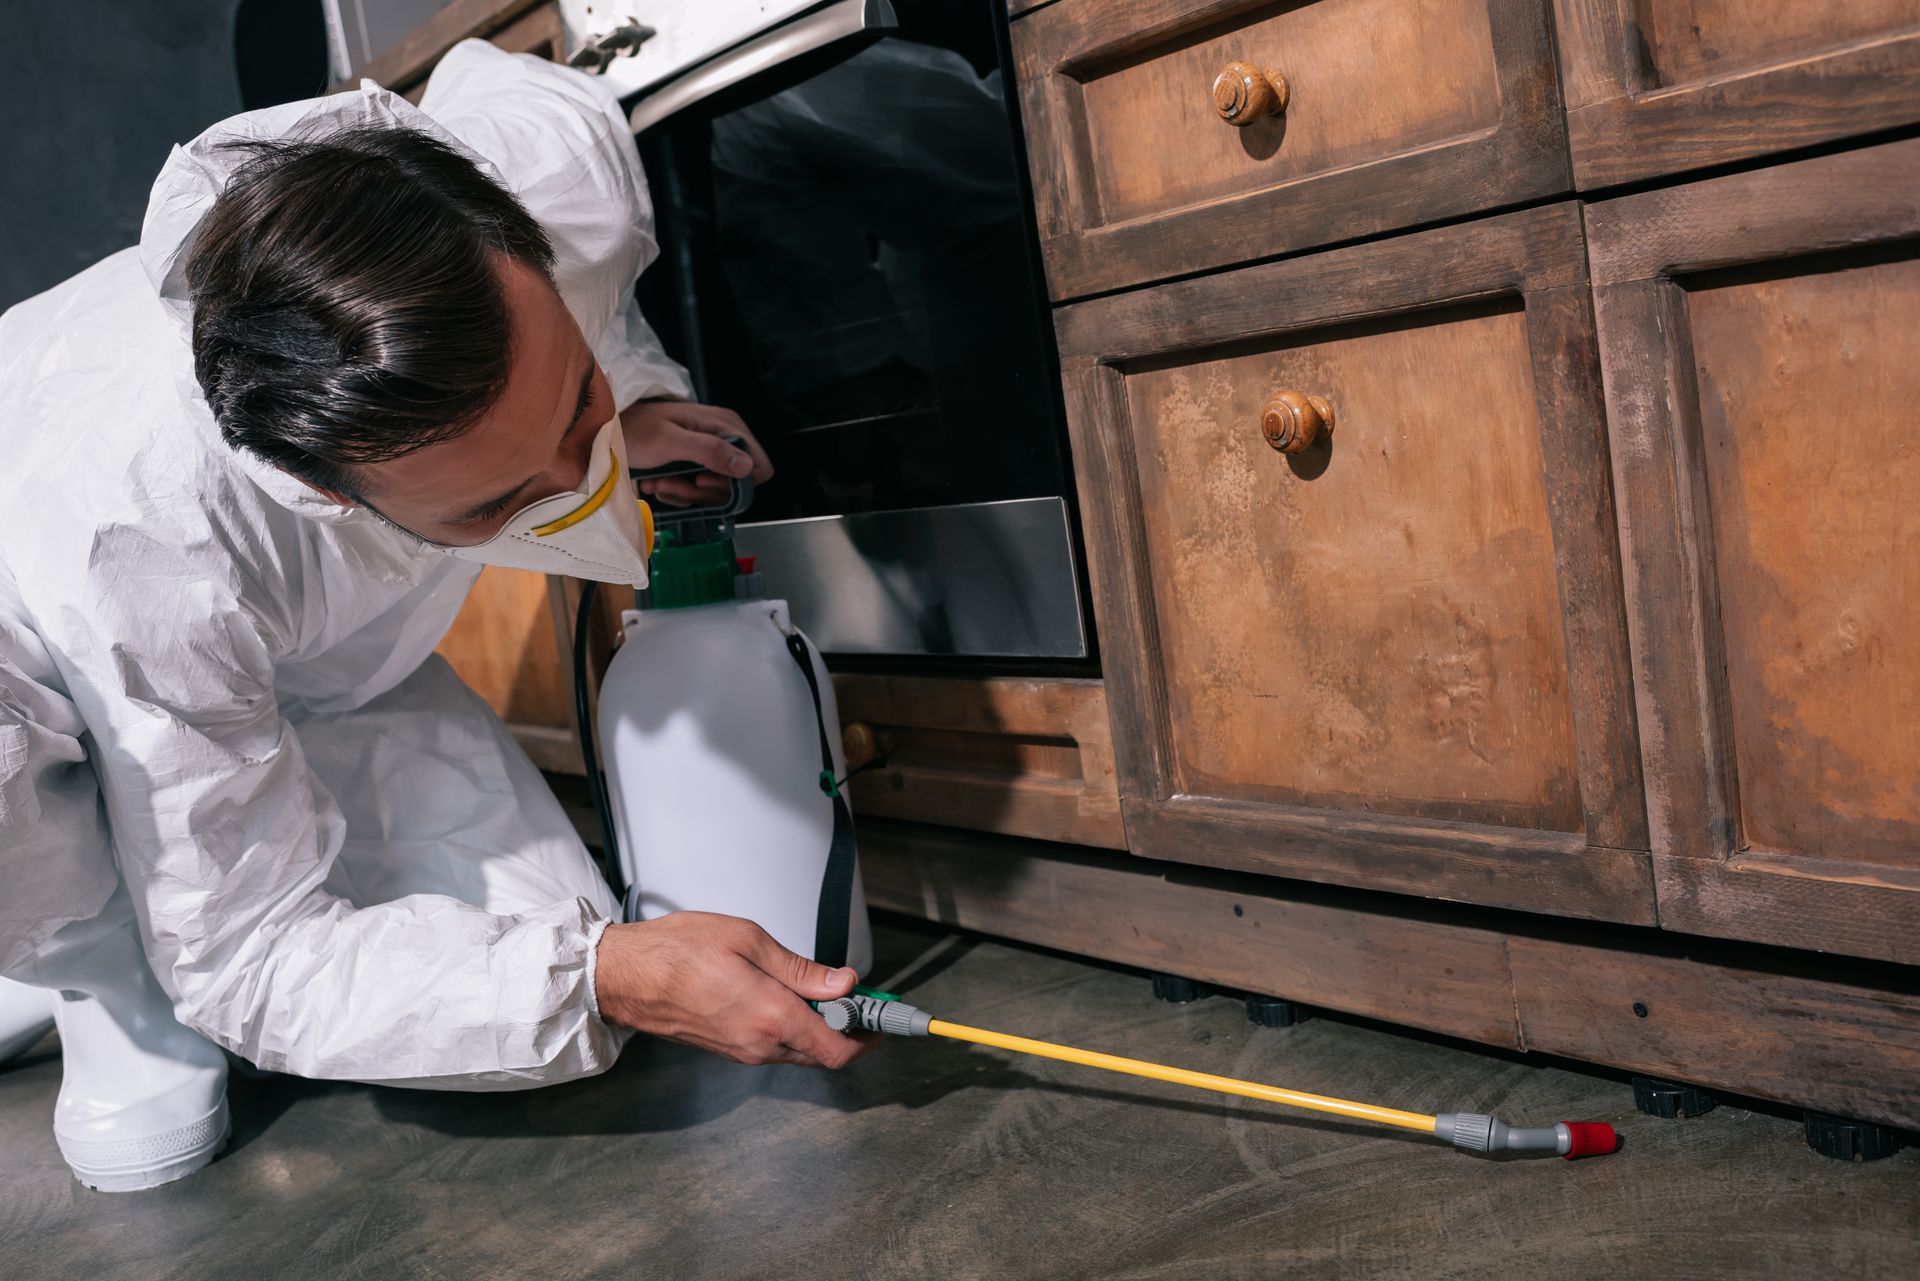 Pest control worker in uniform spraying pesticides under cabinet in kitchen